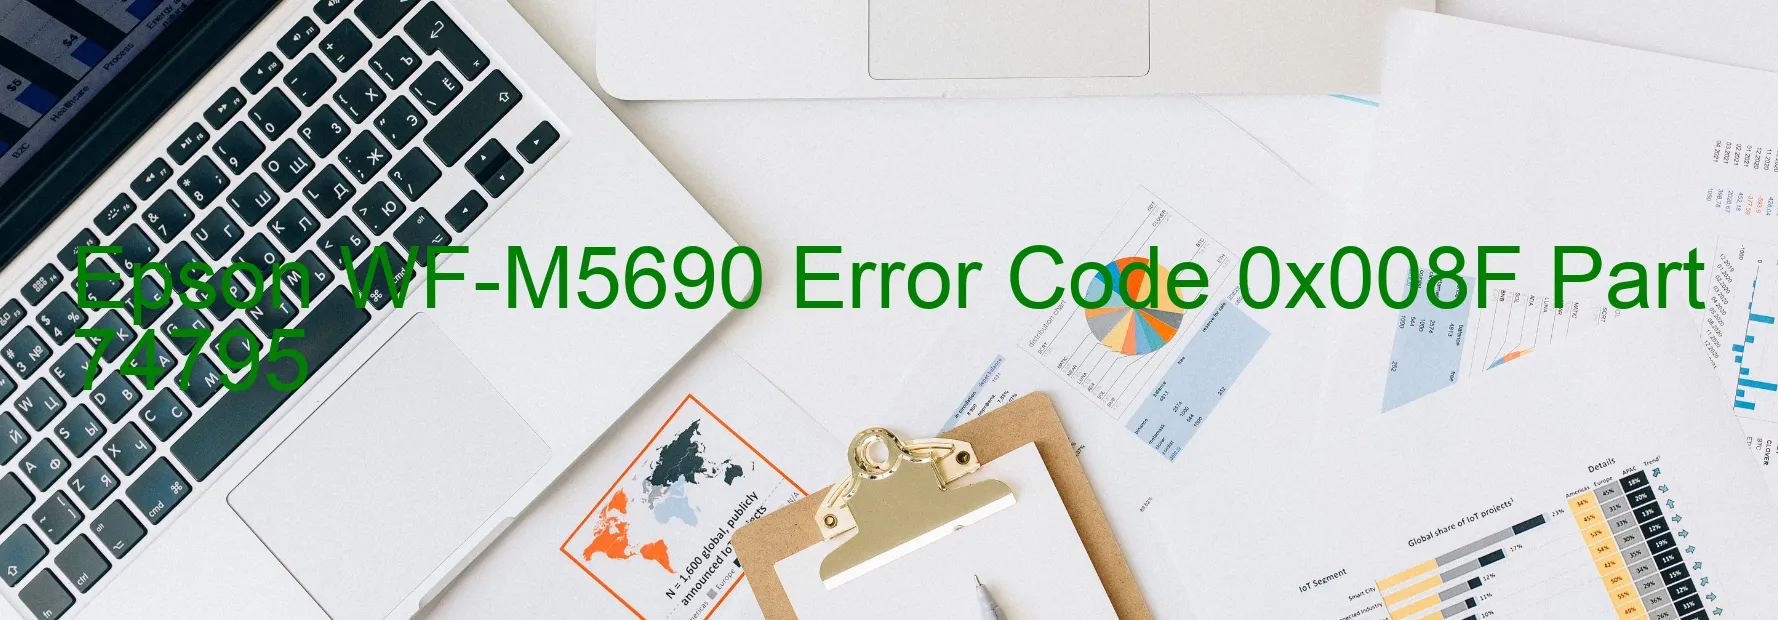 Epson WF-M5690 Error Code 0x008F Part 74795